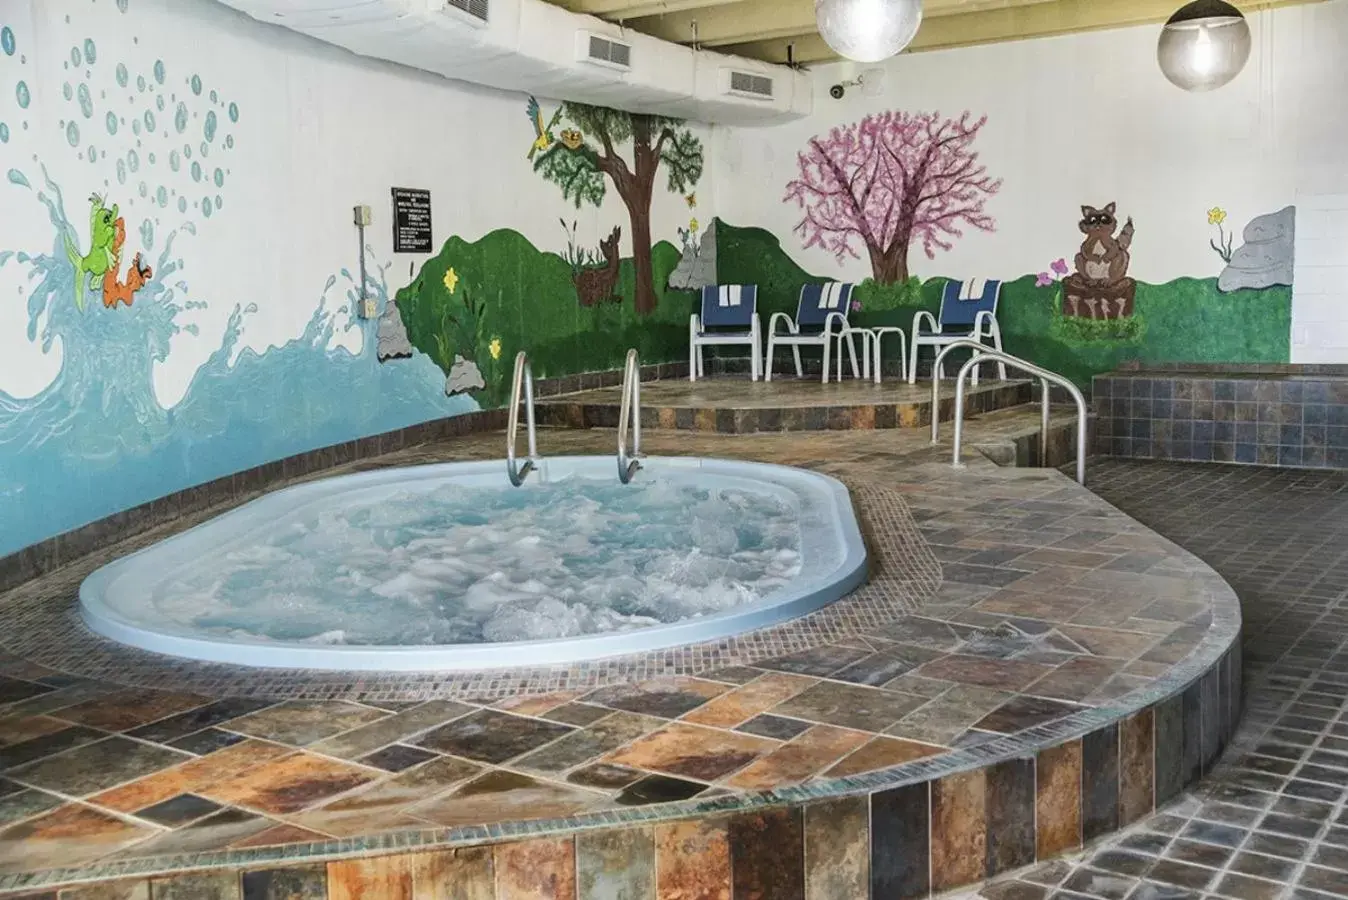 Hot Tub, Swimming Pool in Potawatomi Inn & Cabins